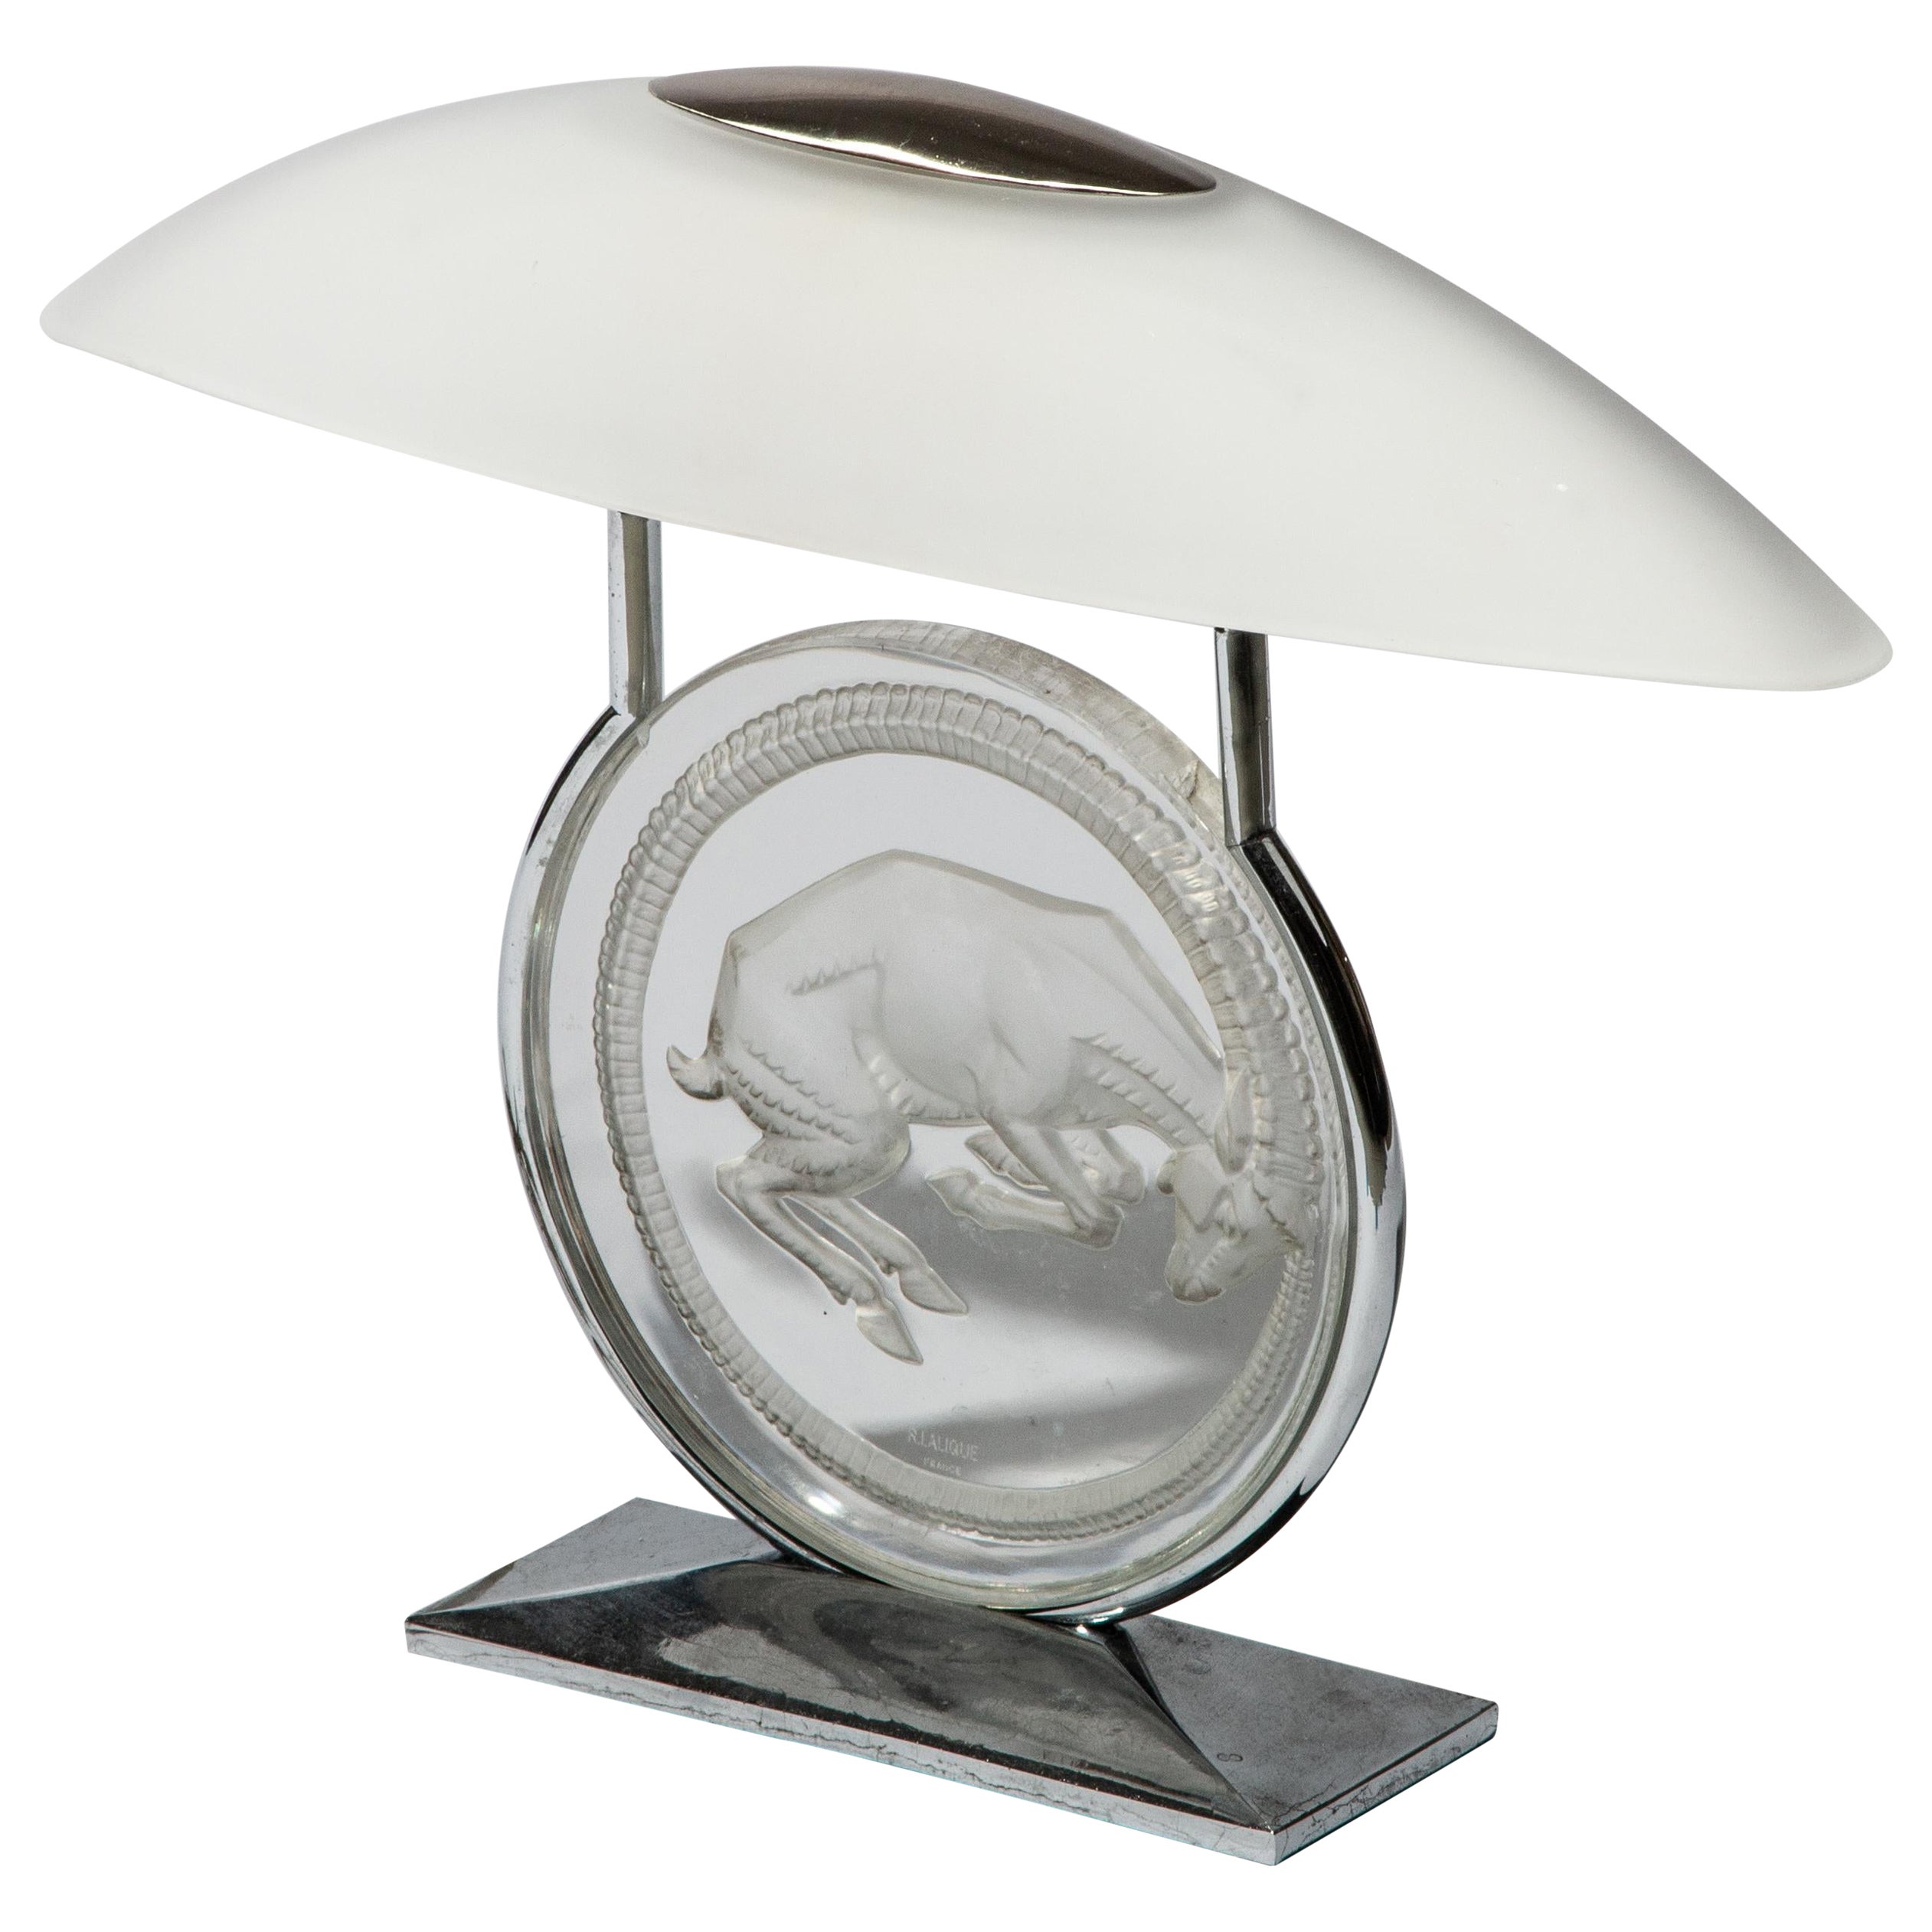 Lalique Art Deco "Belier" Art Glass Lamp